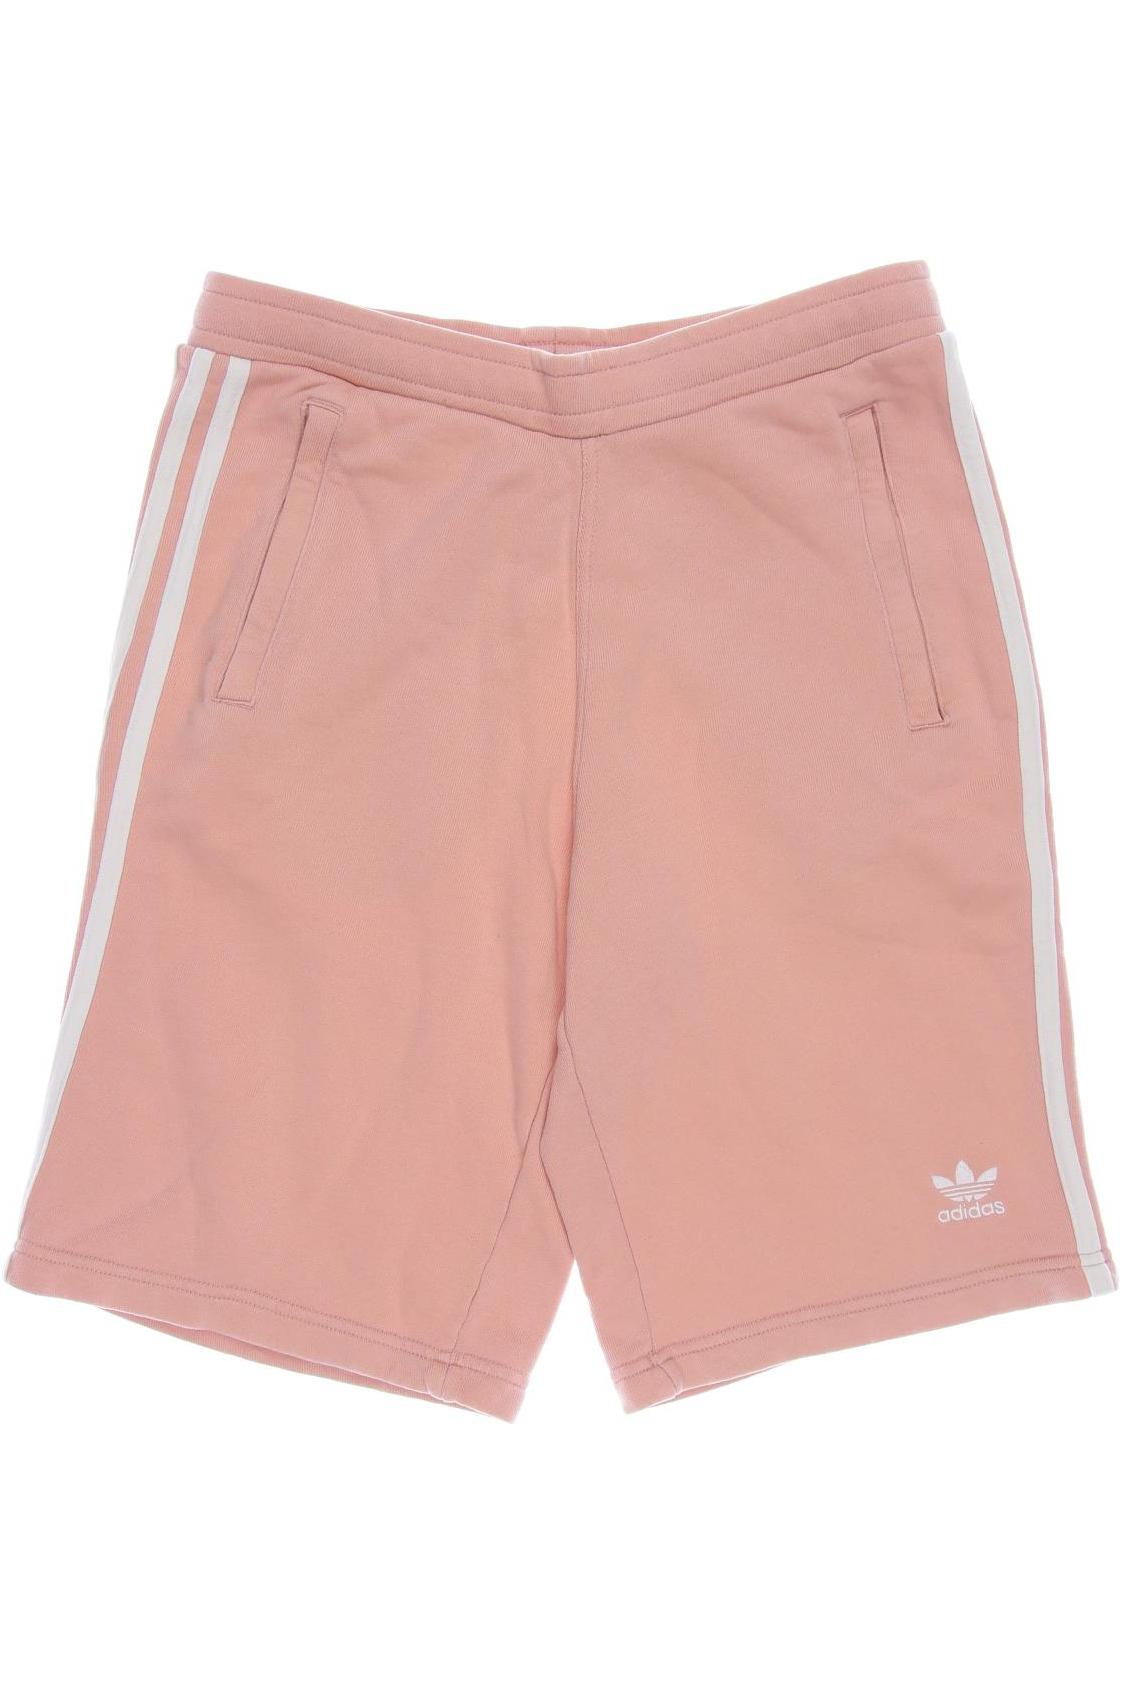 adidas Originals Herren Shorts, pink, Gr. 46 von adidas Originals